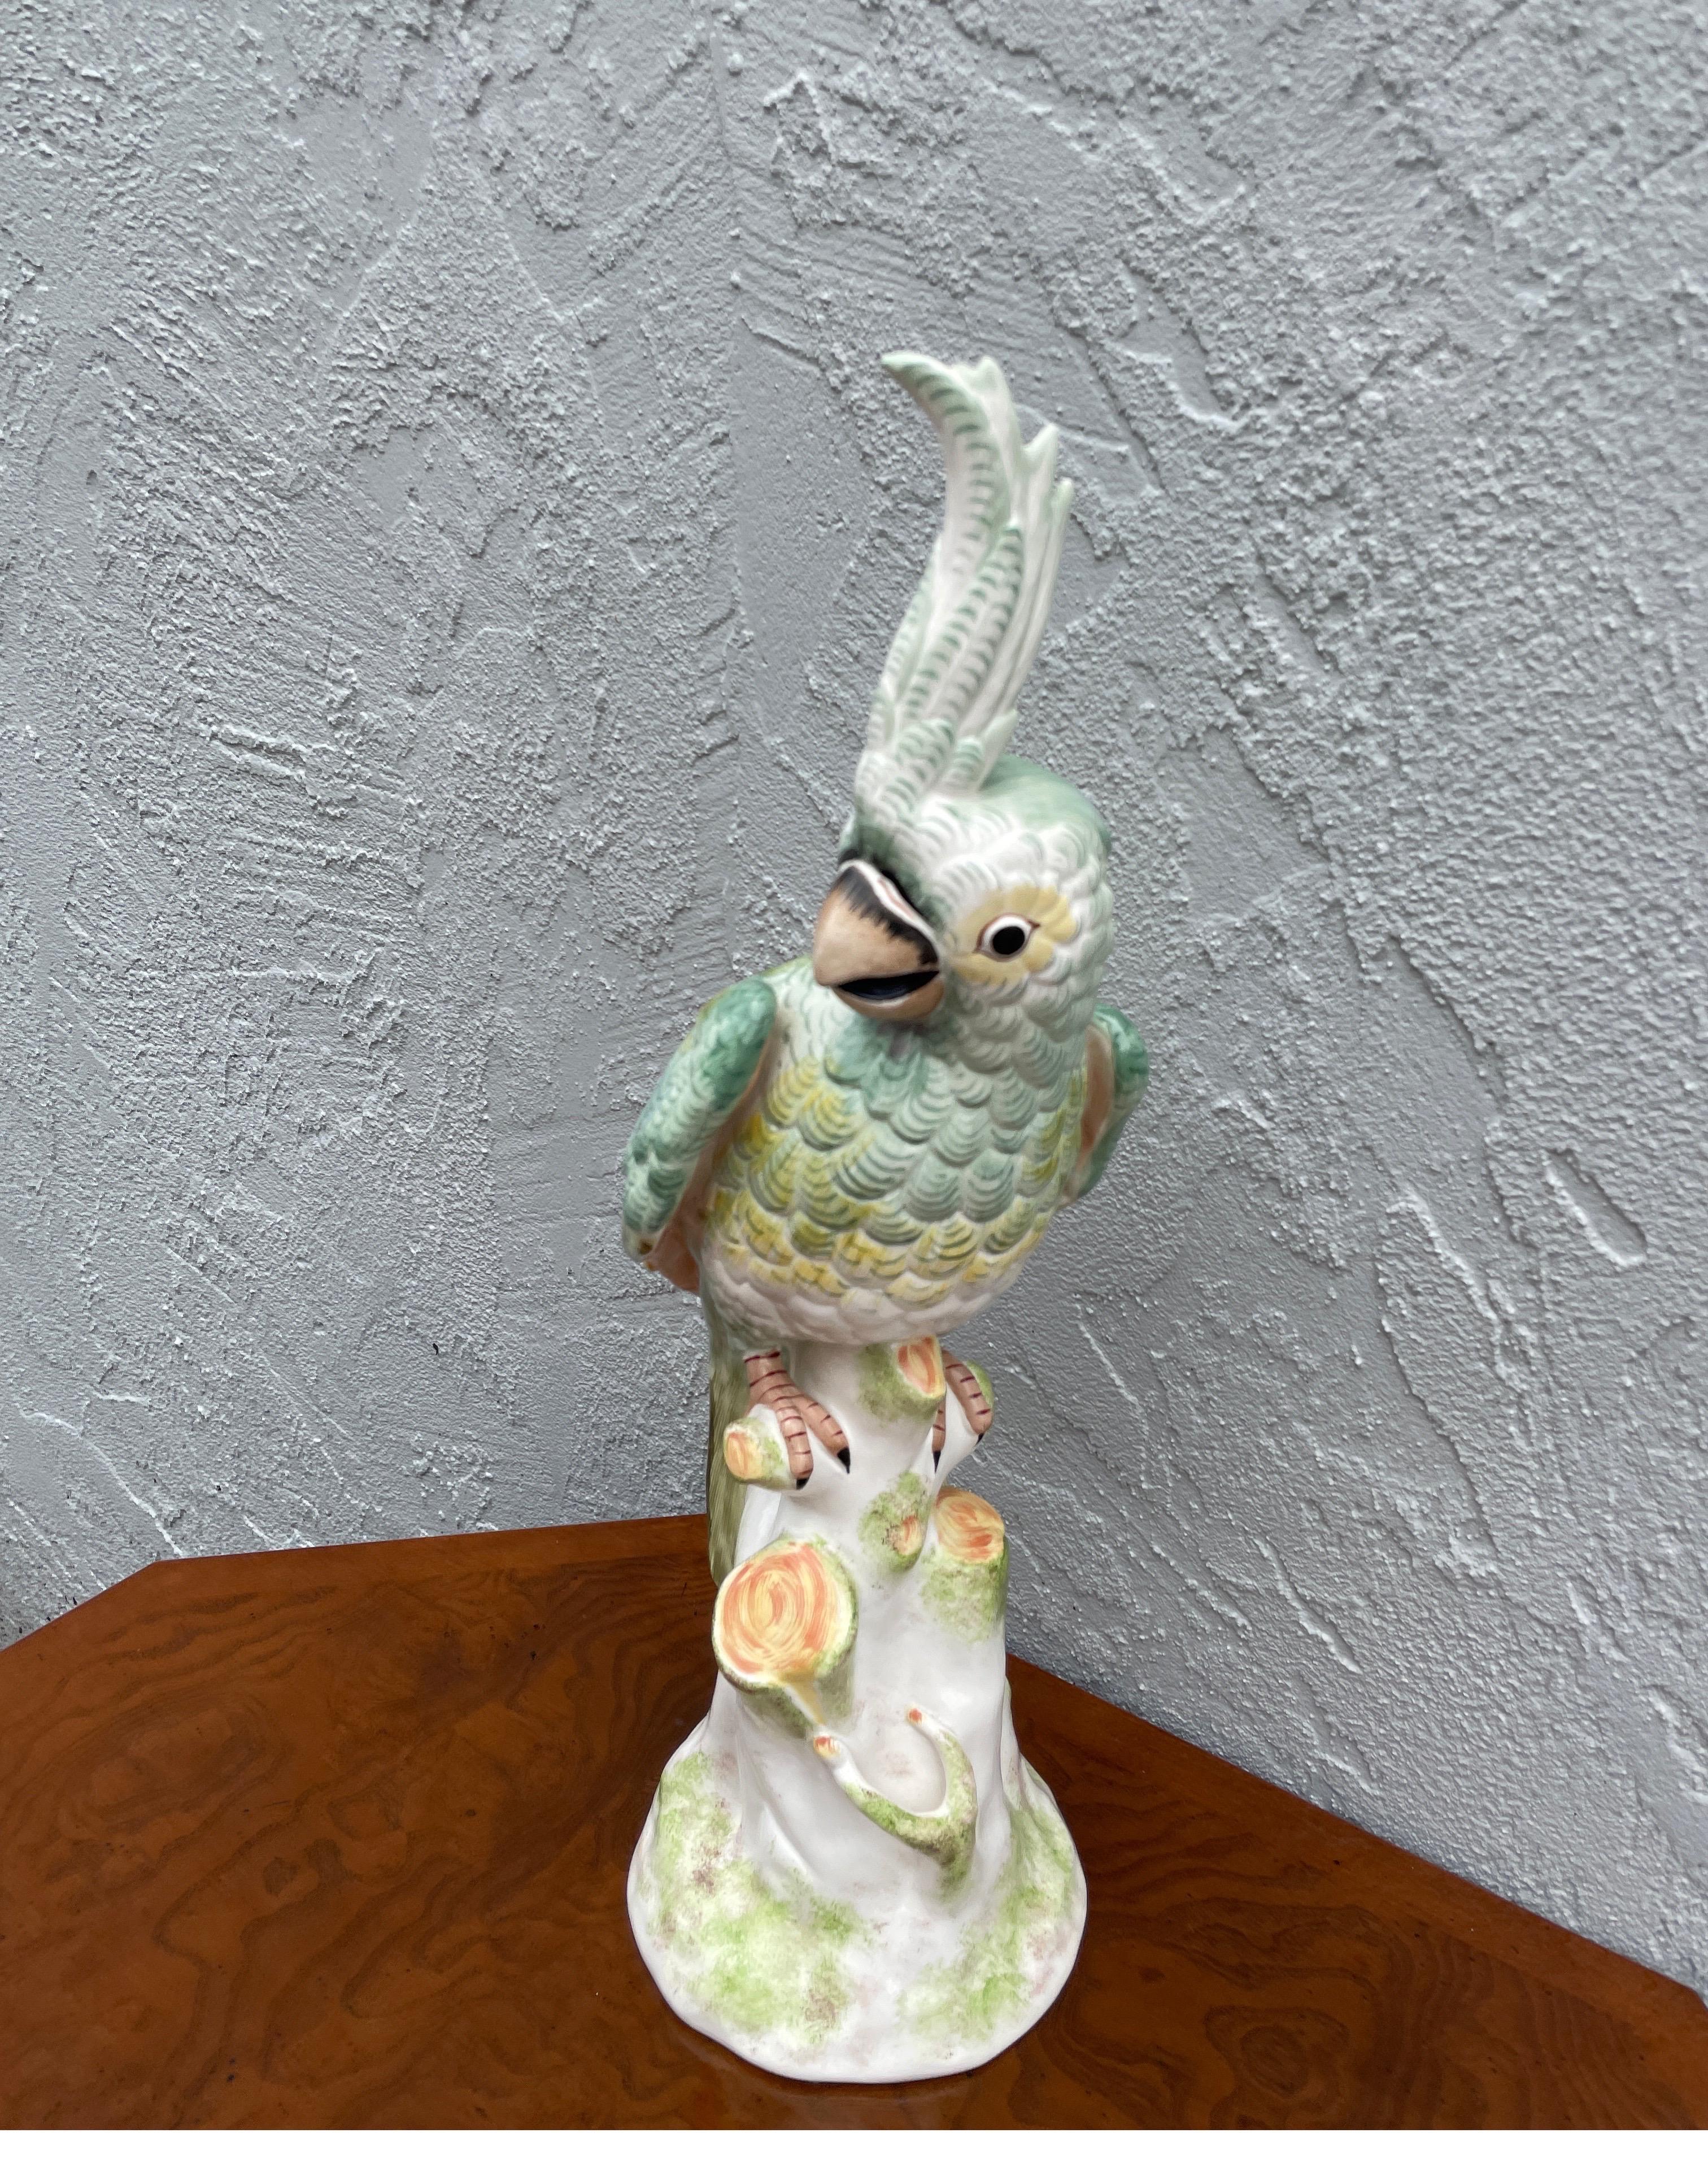 Vintage Italian porcelain parrot figurine by Paul Hanson.